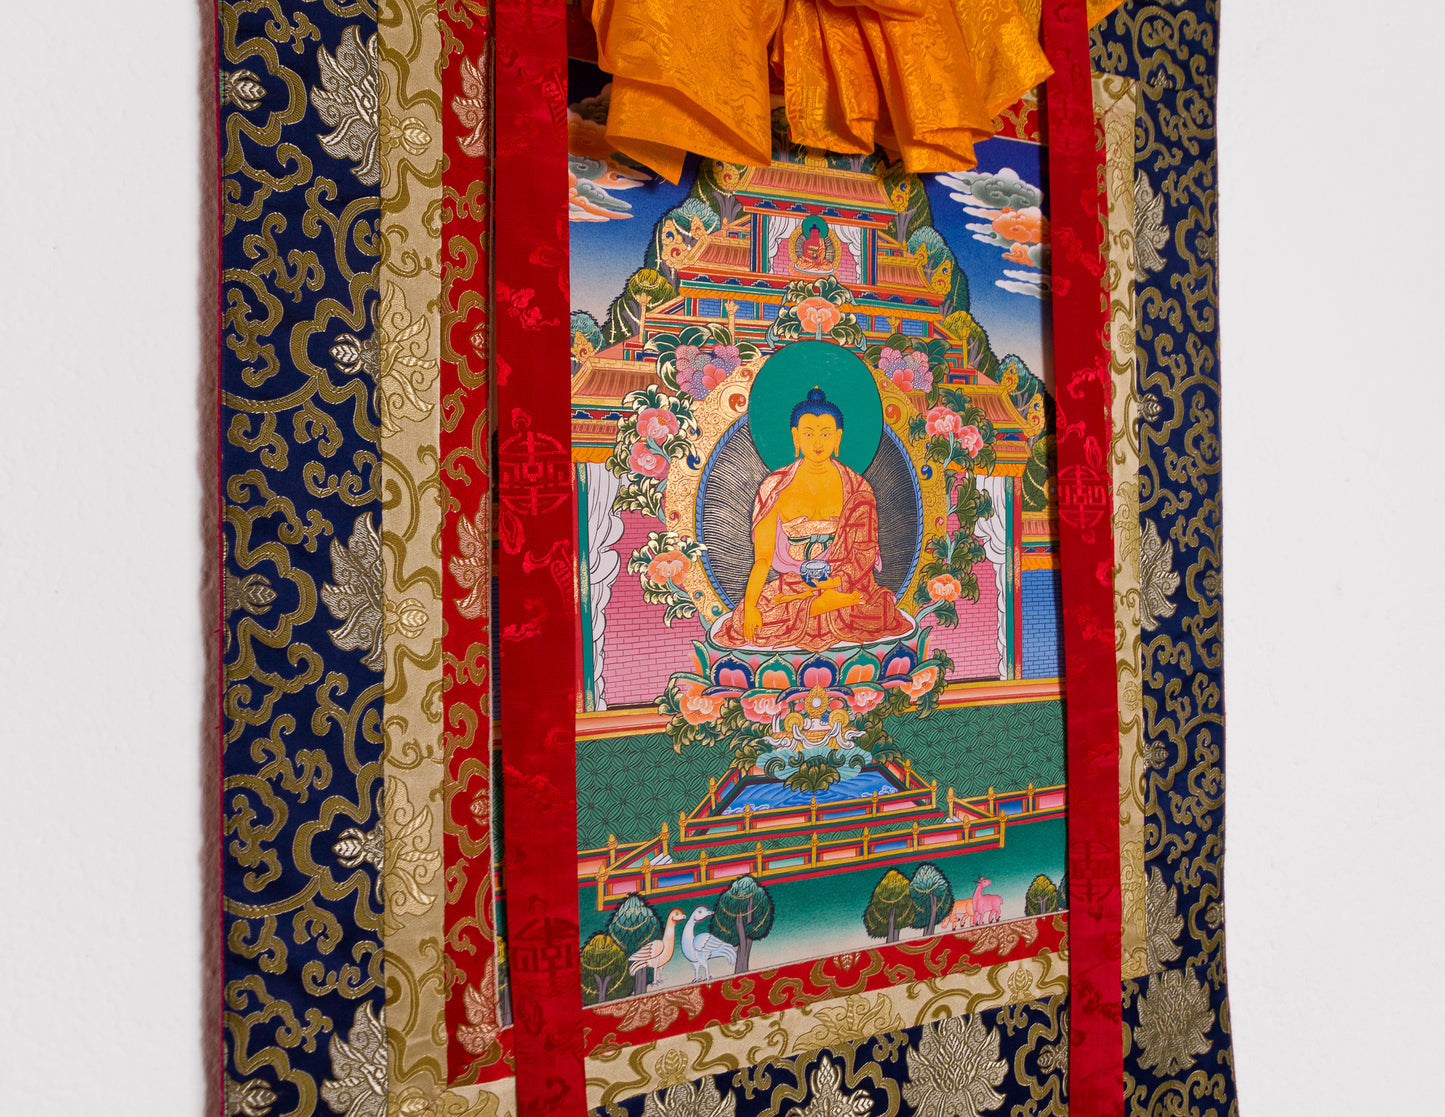 Shakyamuni Thangka I